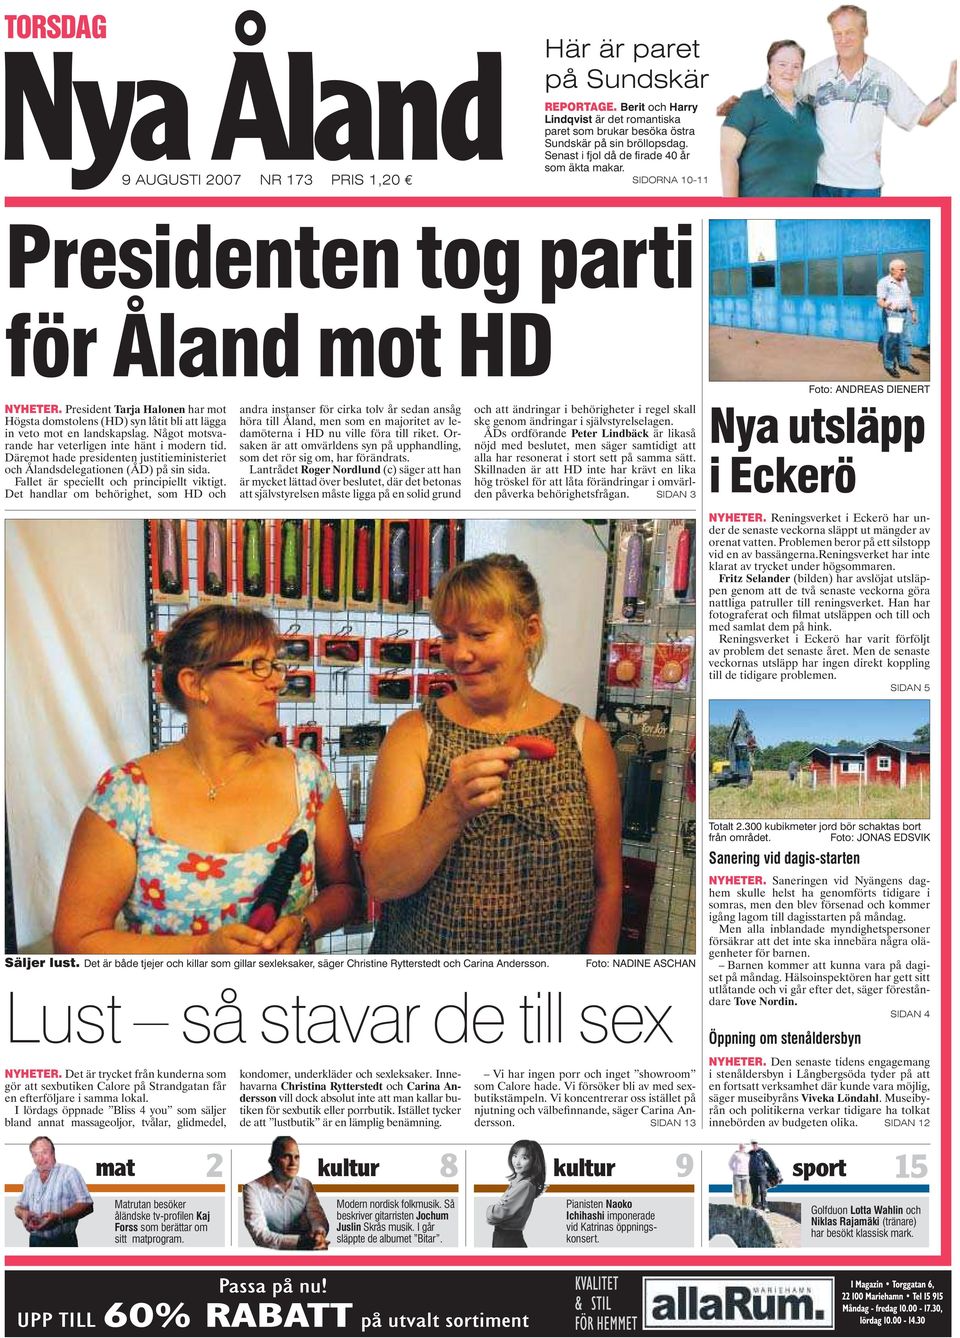 Presidenten tog parti för Åland mot HD